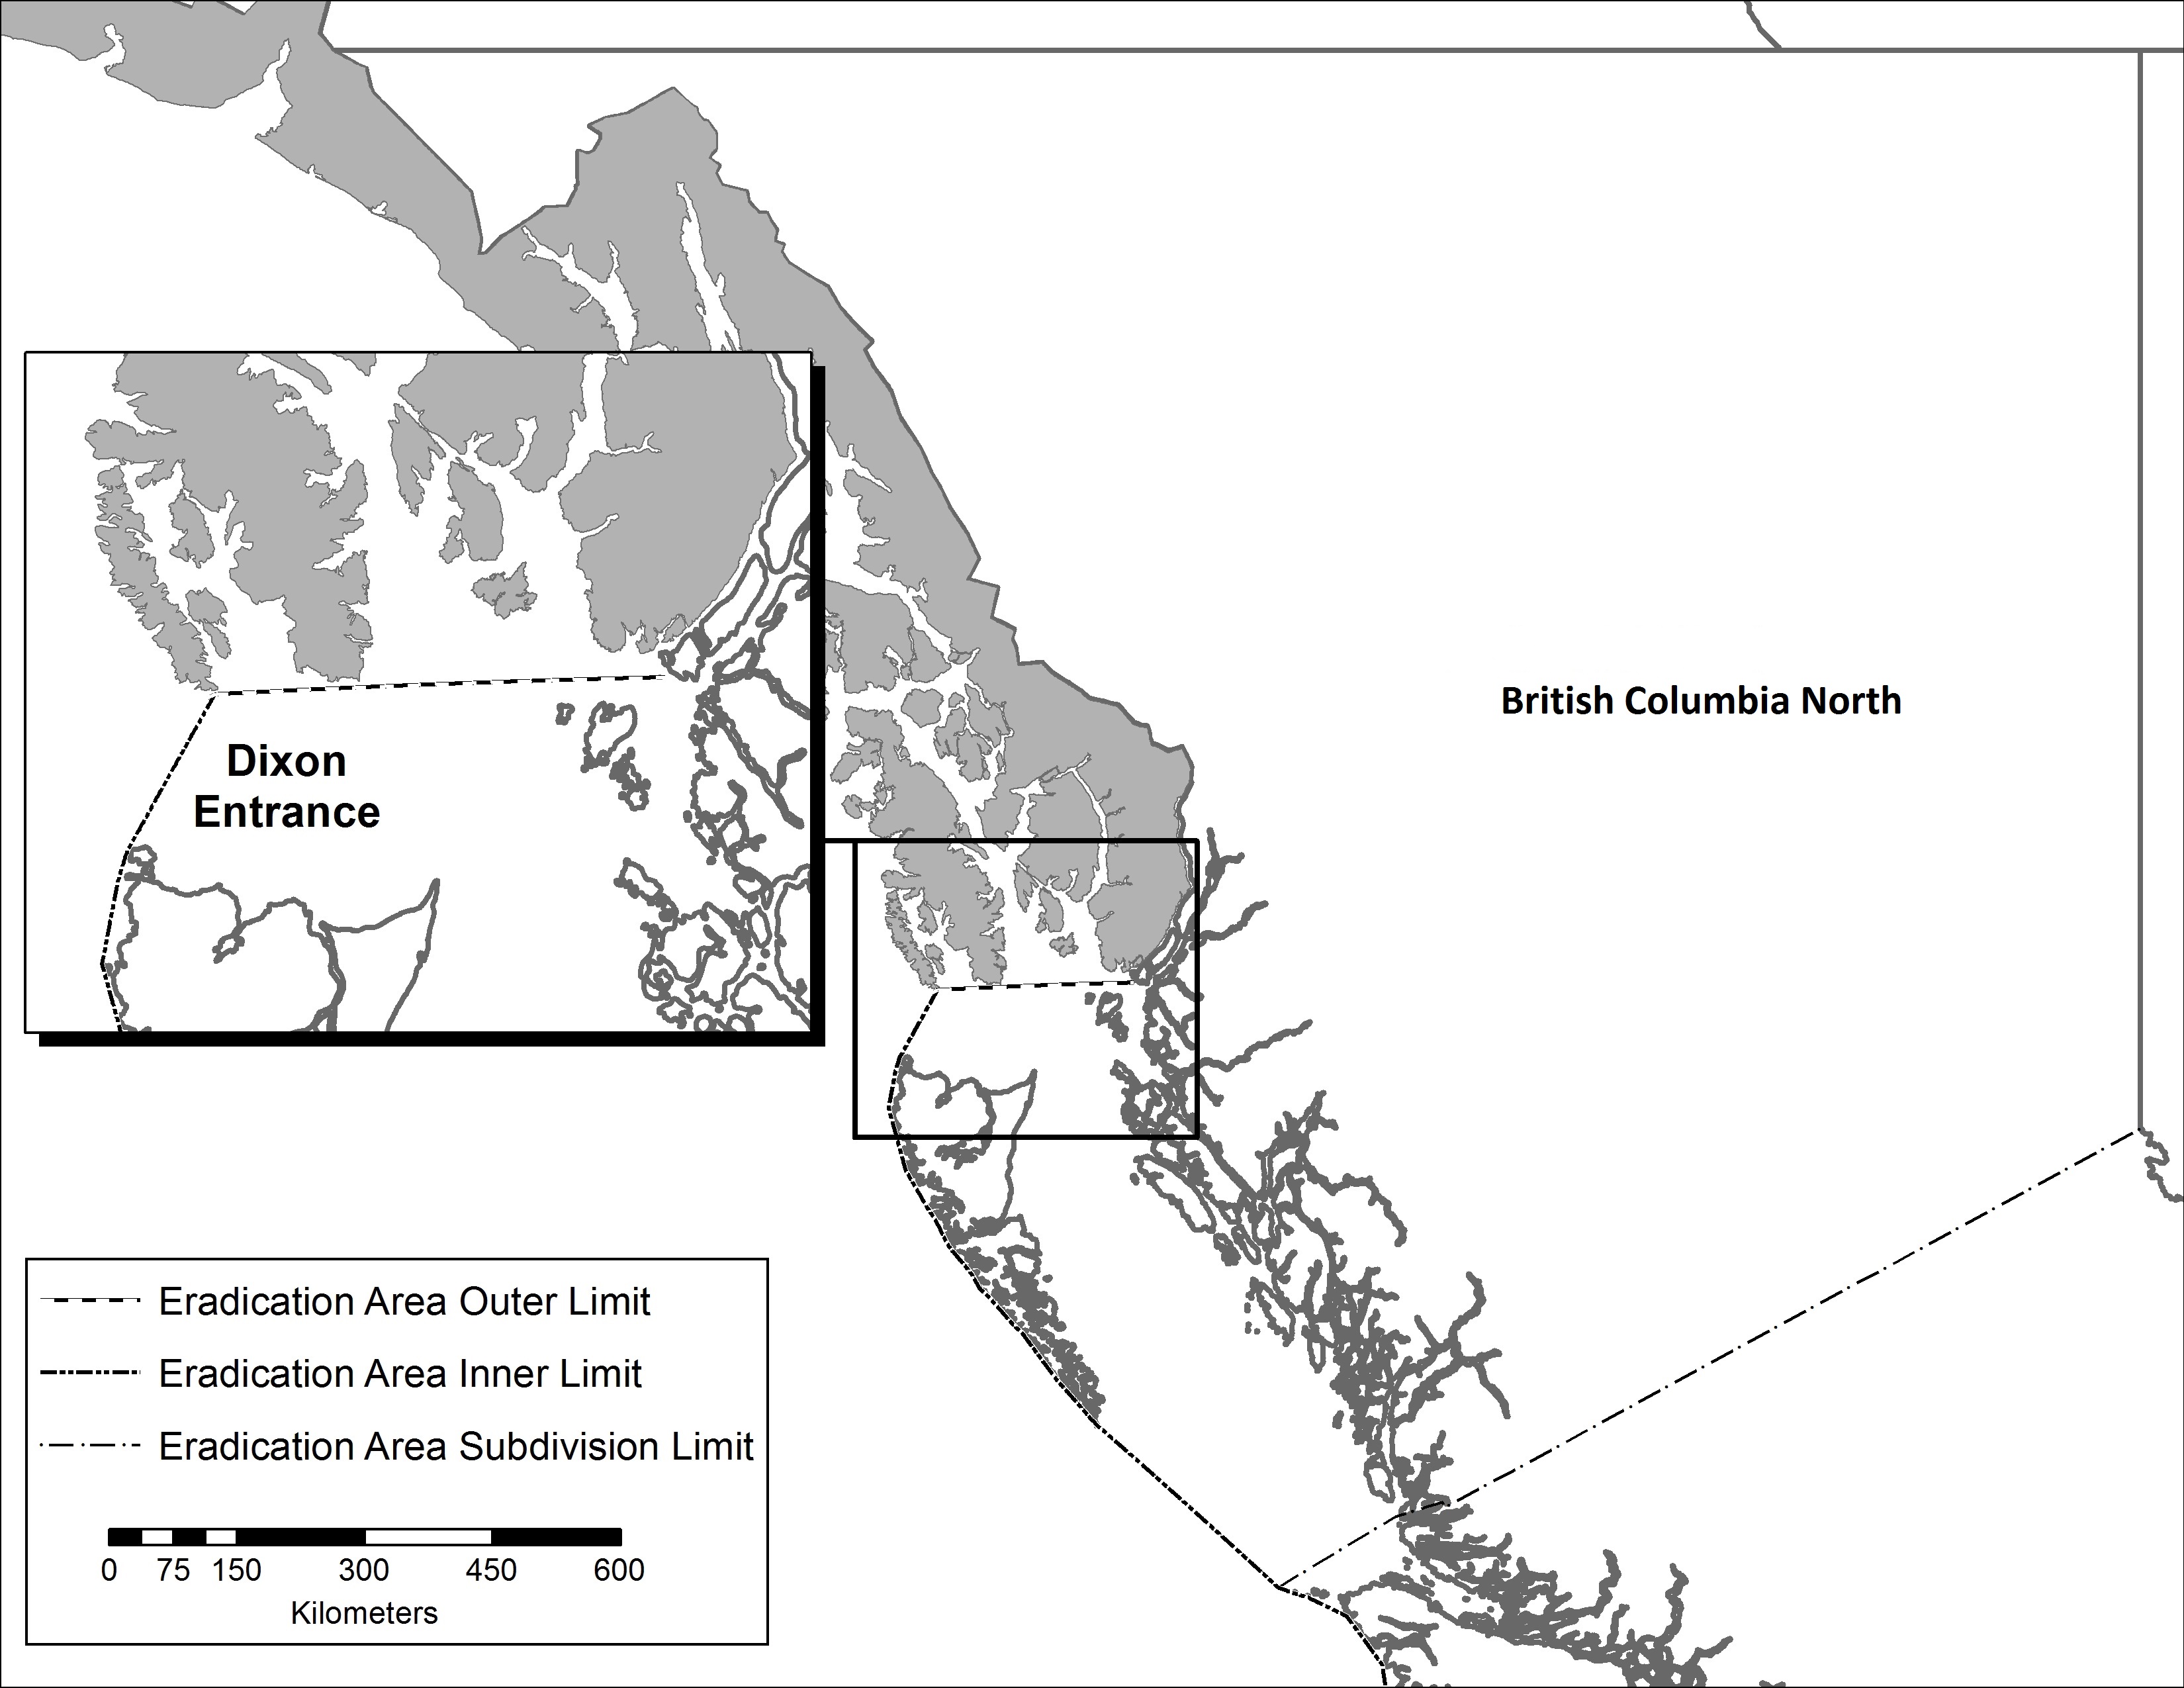 British Columbia North map. Description follows.